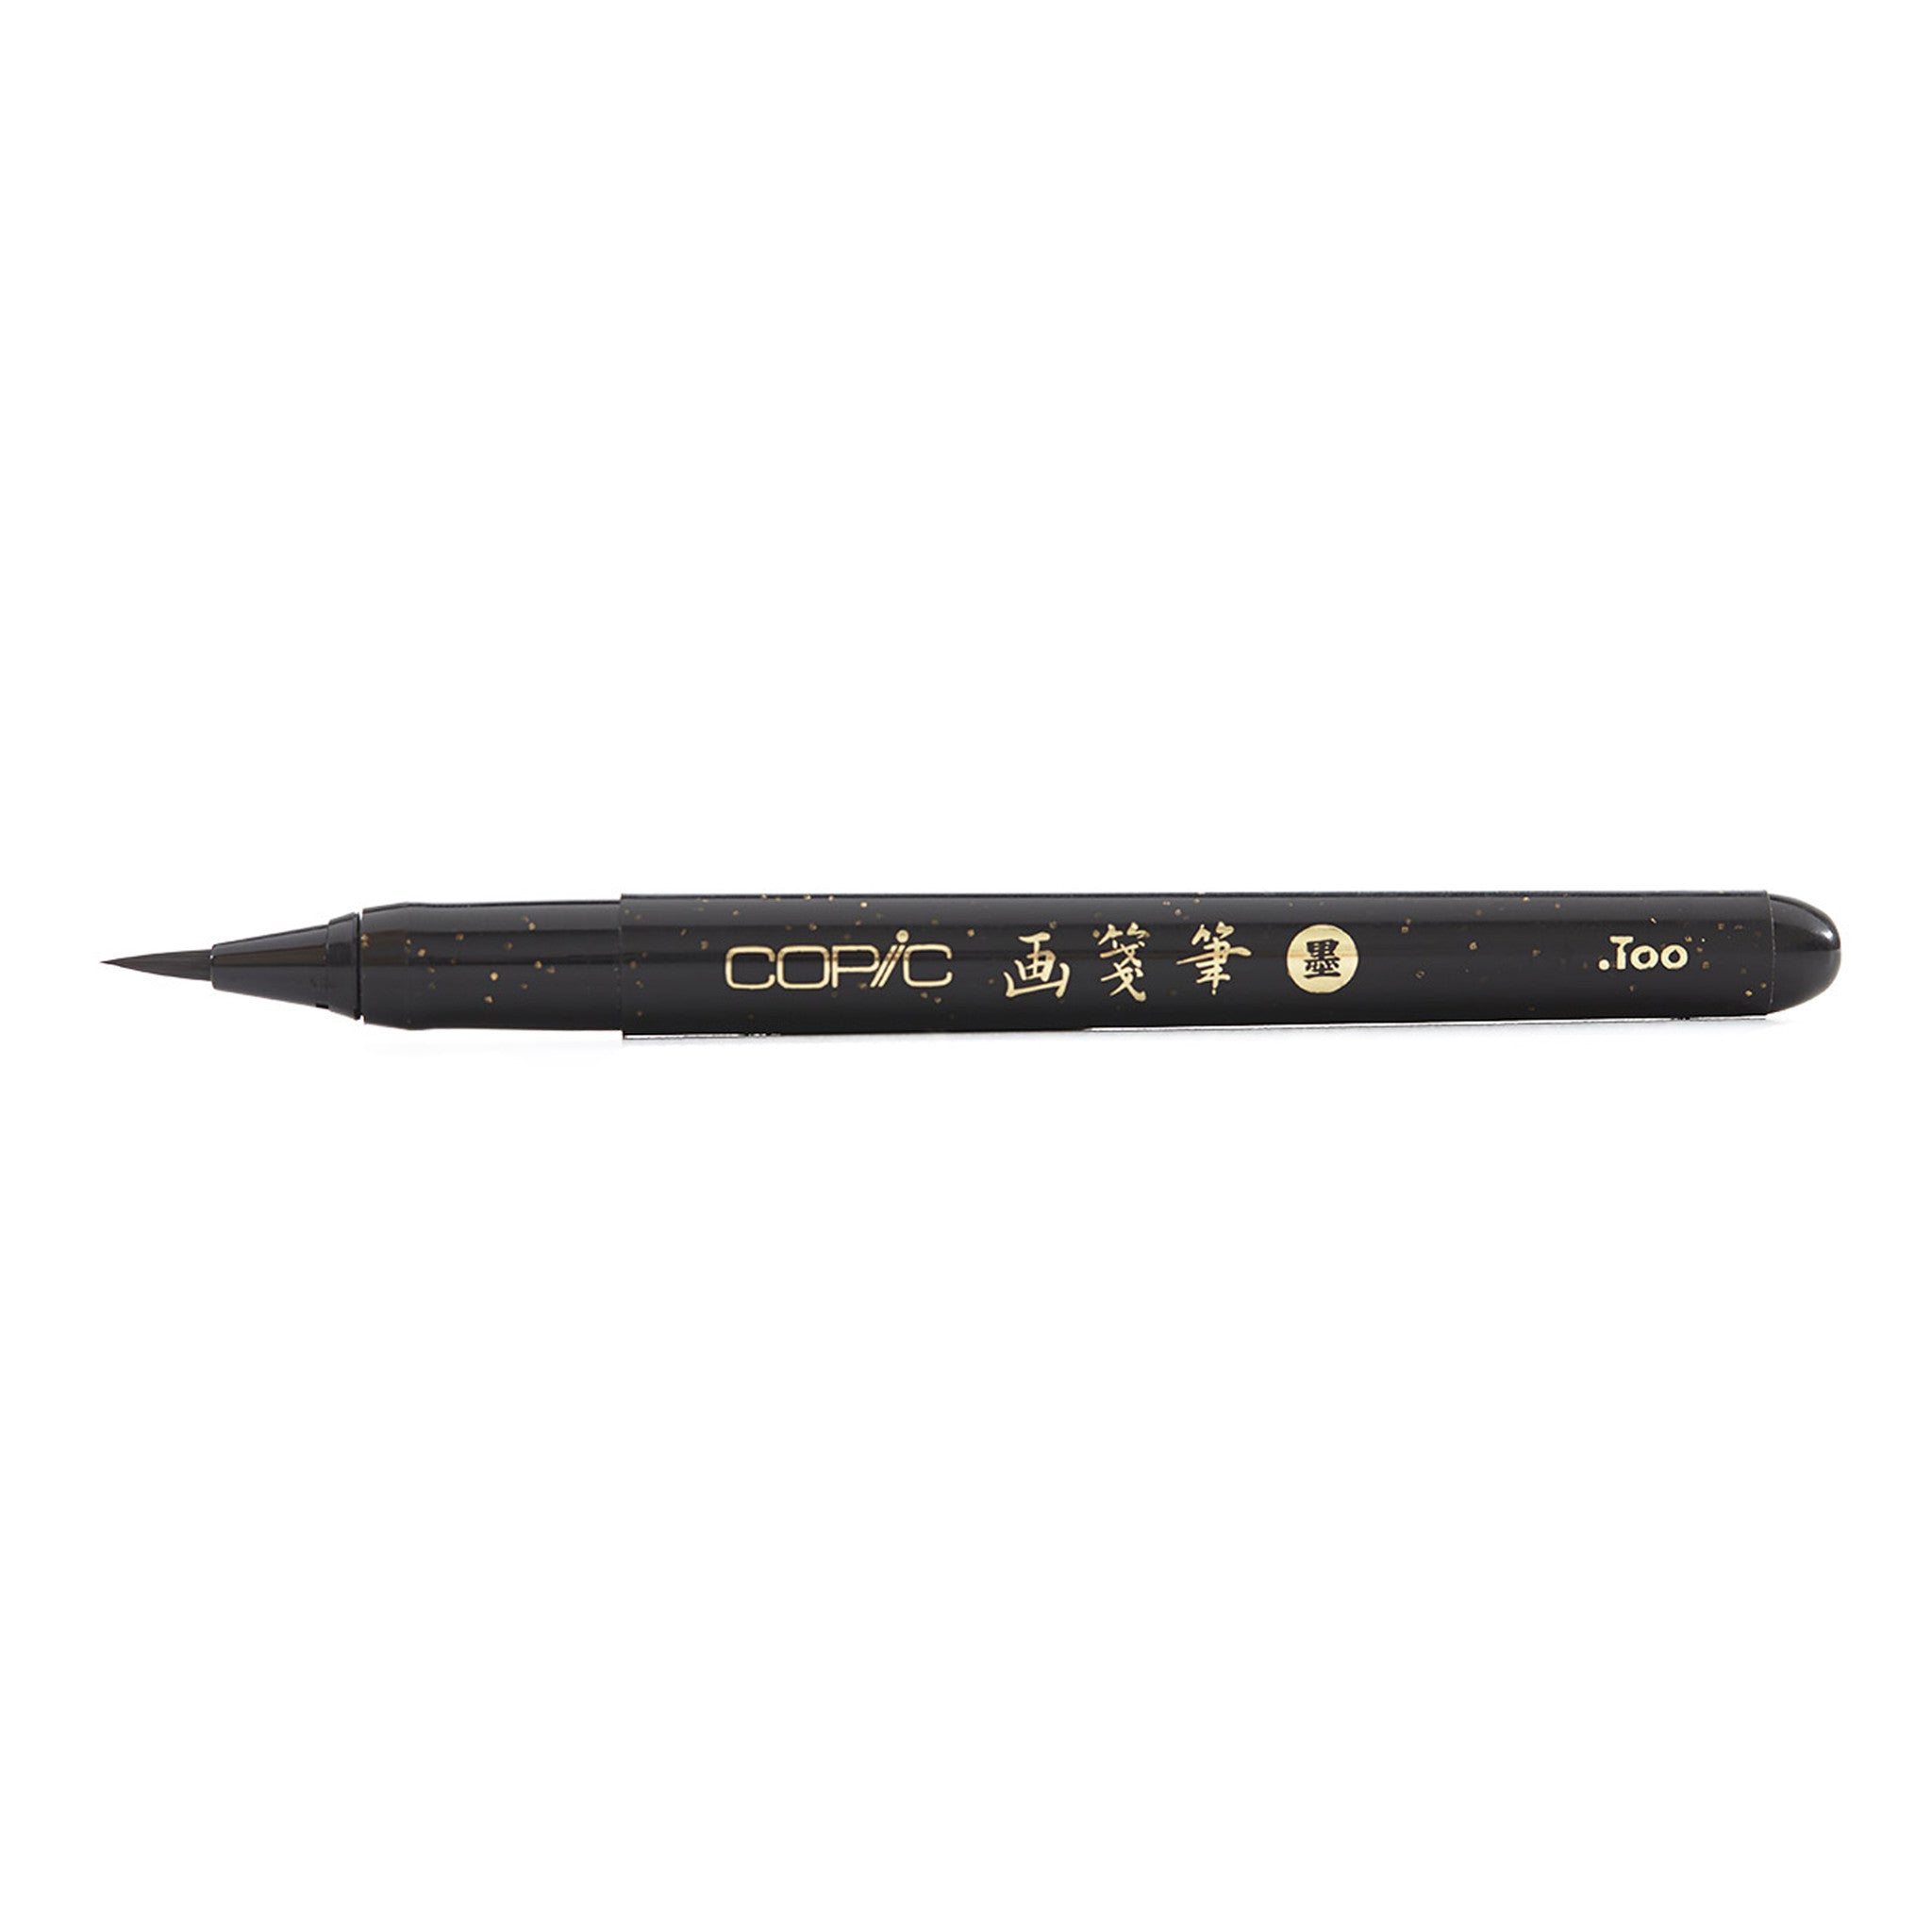 Copic Gasenfude Brush Tip Pen